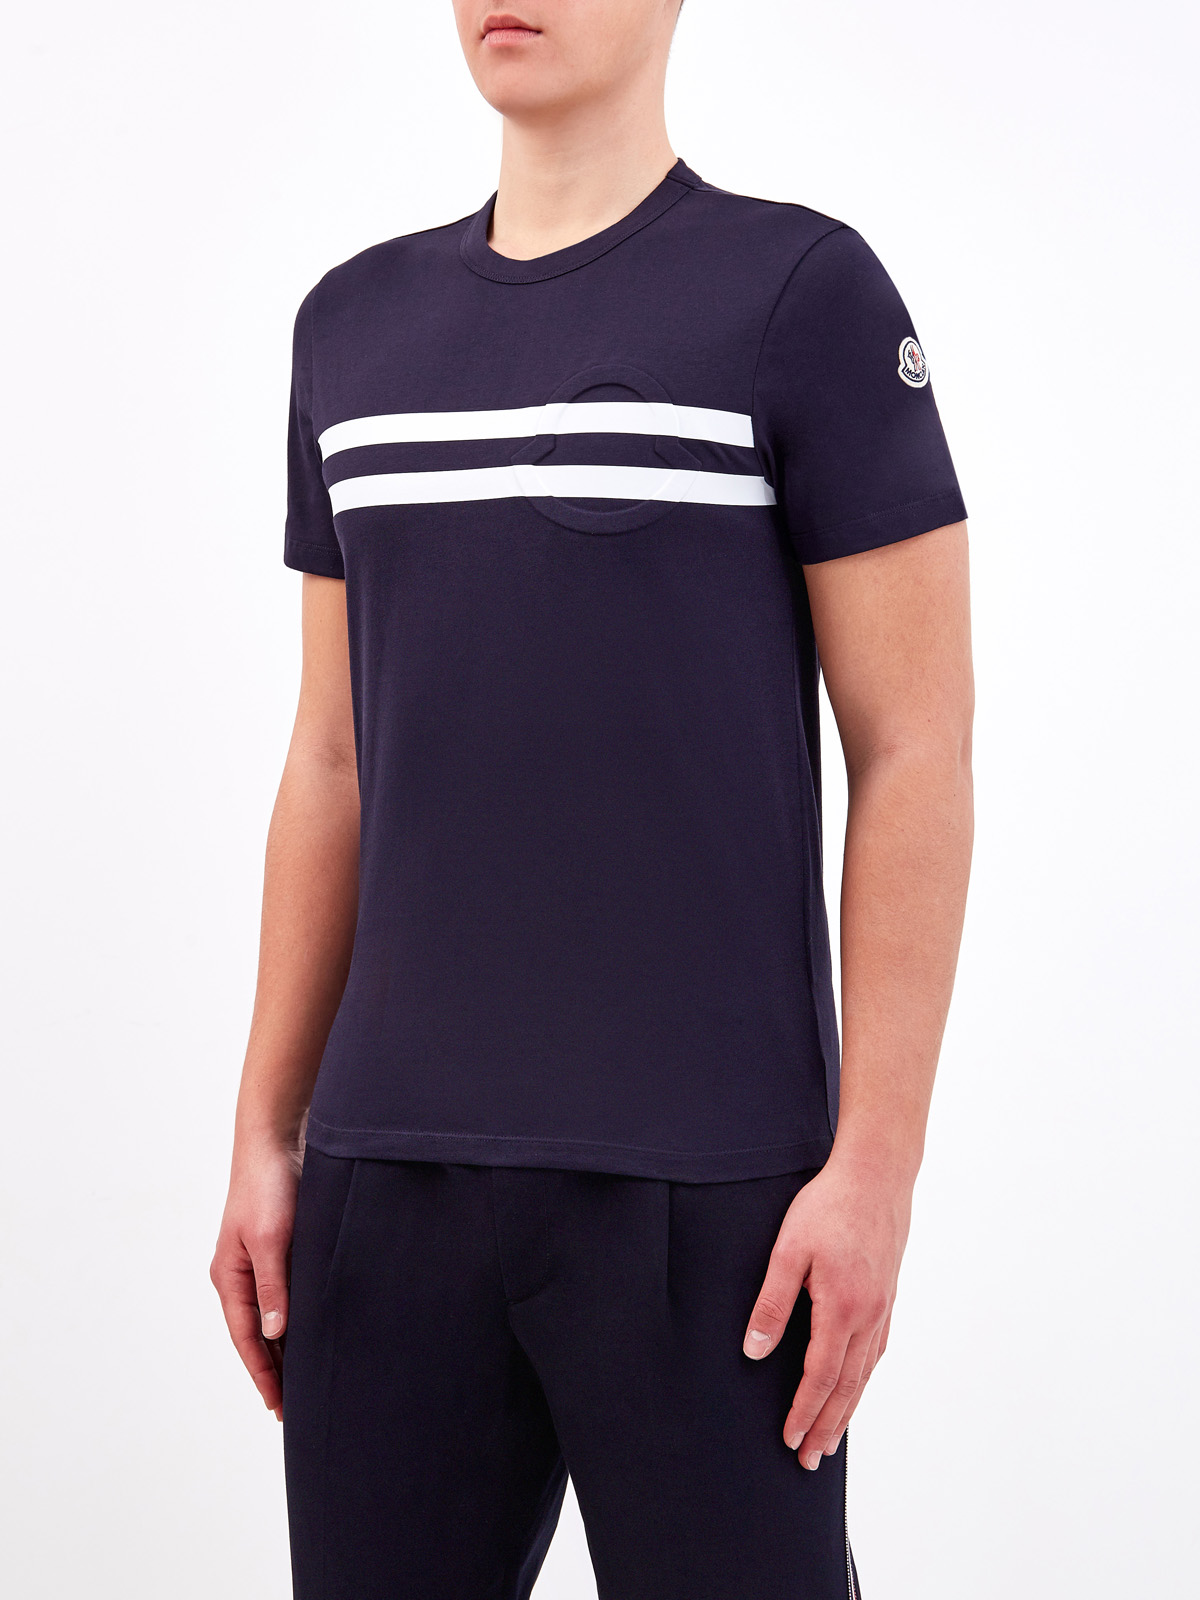 Хлопковая футболка из джерси с объемным логотипом MONCLER, цвет черный, размер M;L;XL;2XL;3XL;S - фото 3